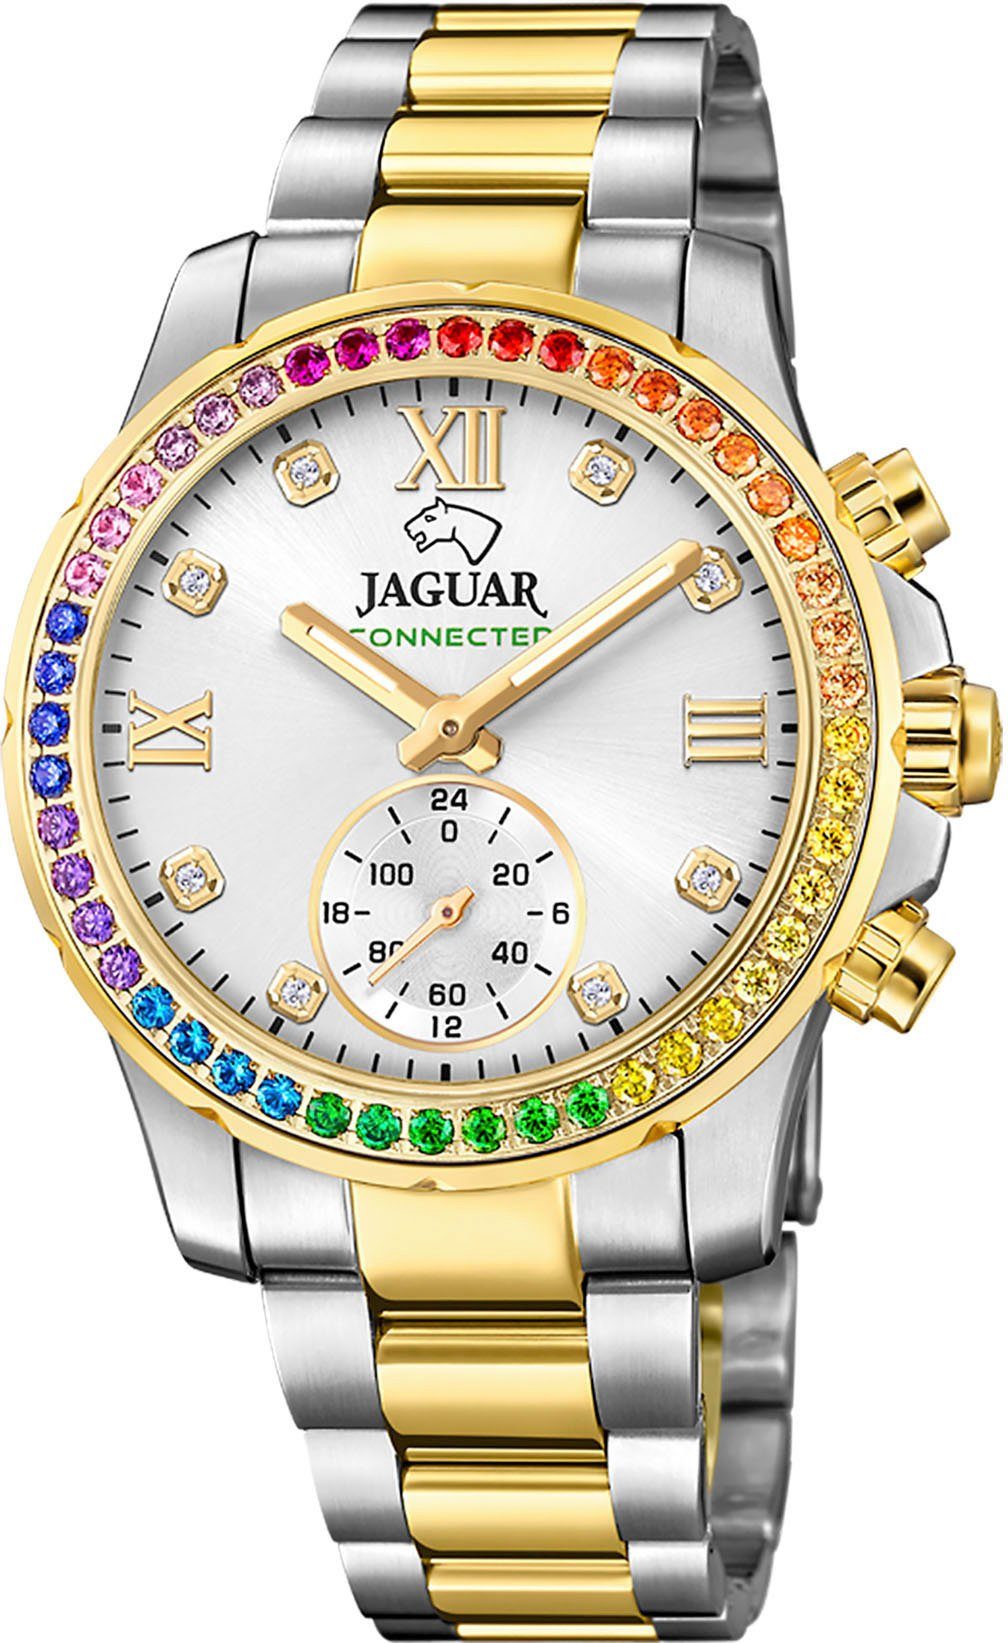 Jaguar Chronograph Connected, J982/4